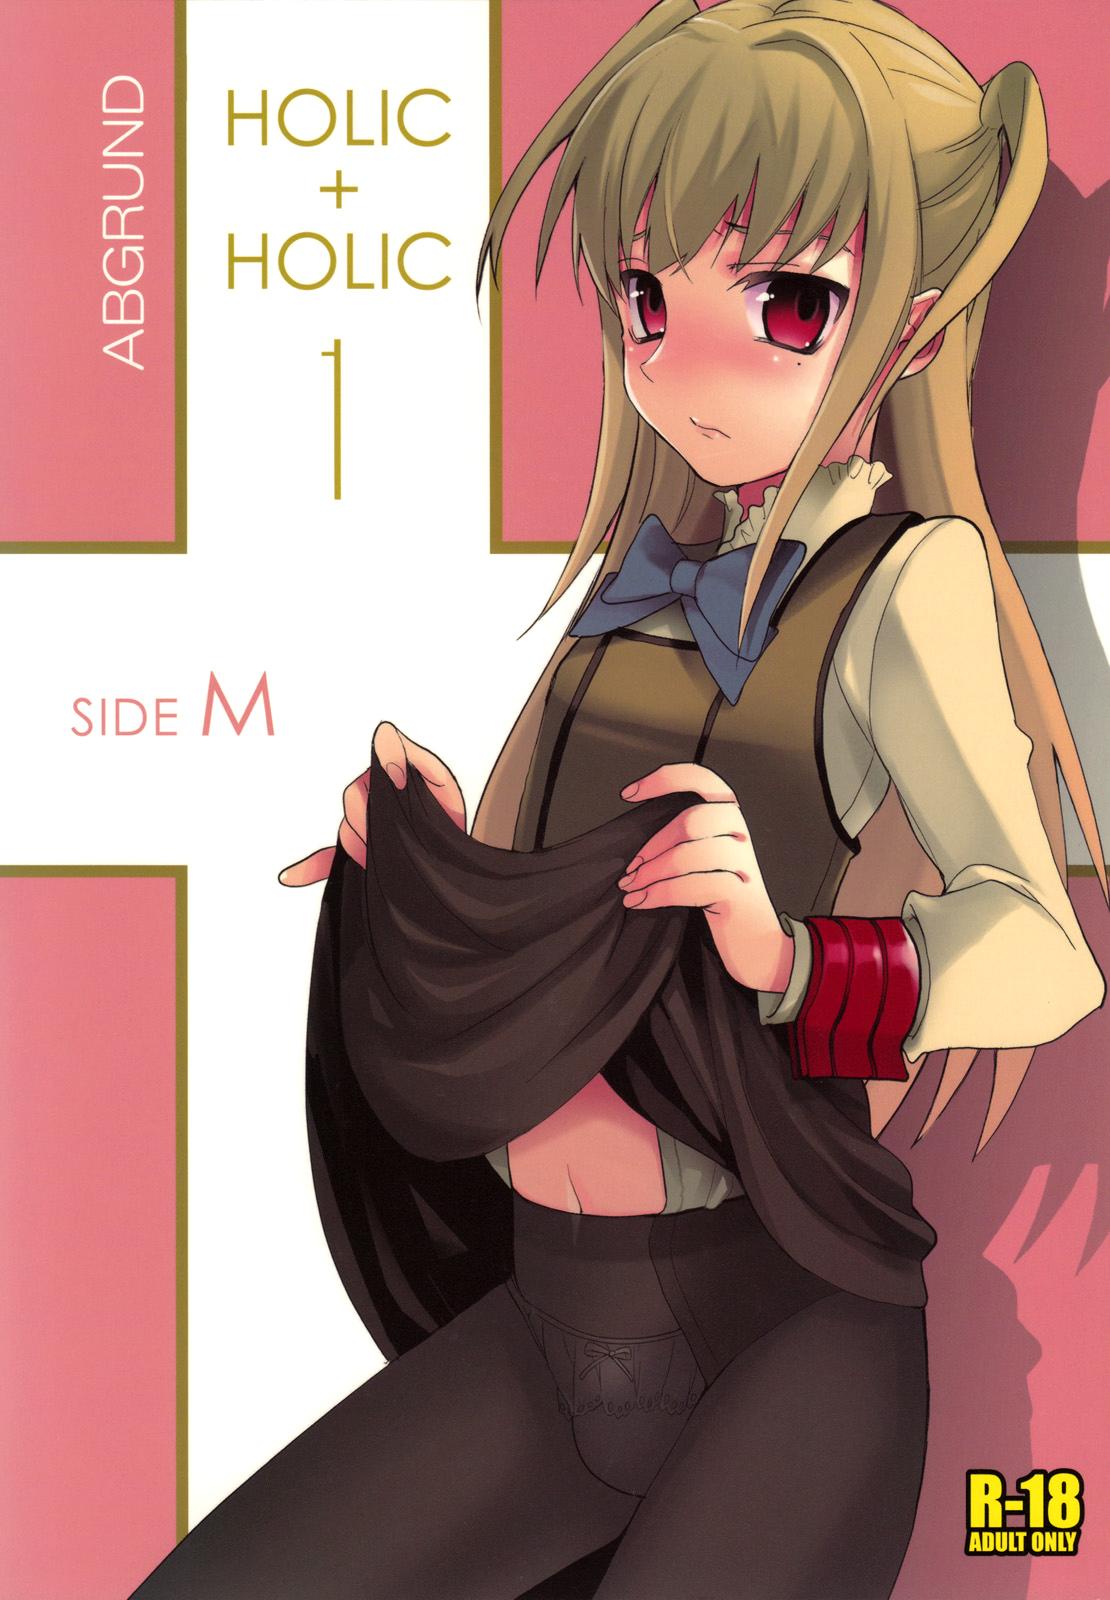 HOLIC + HOLIC 1 SIDE M 0